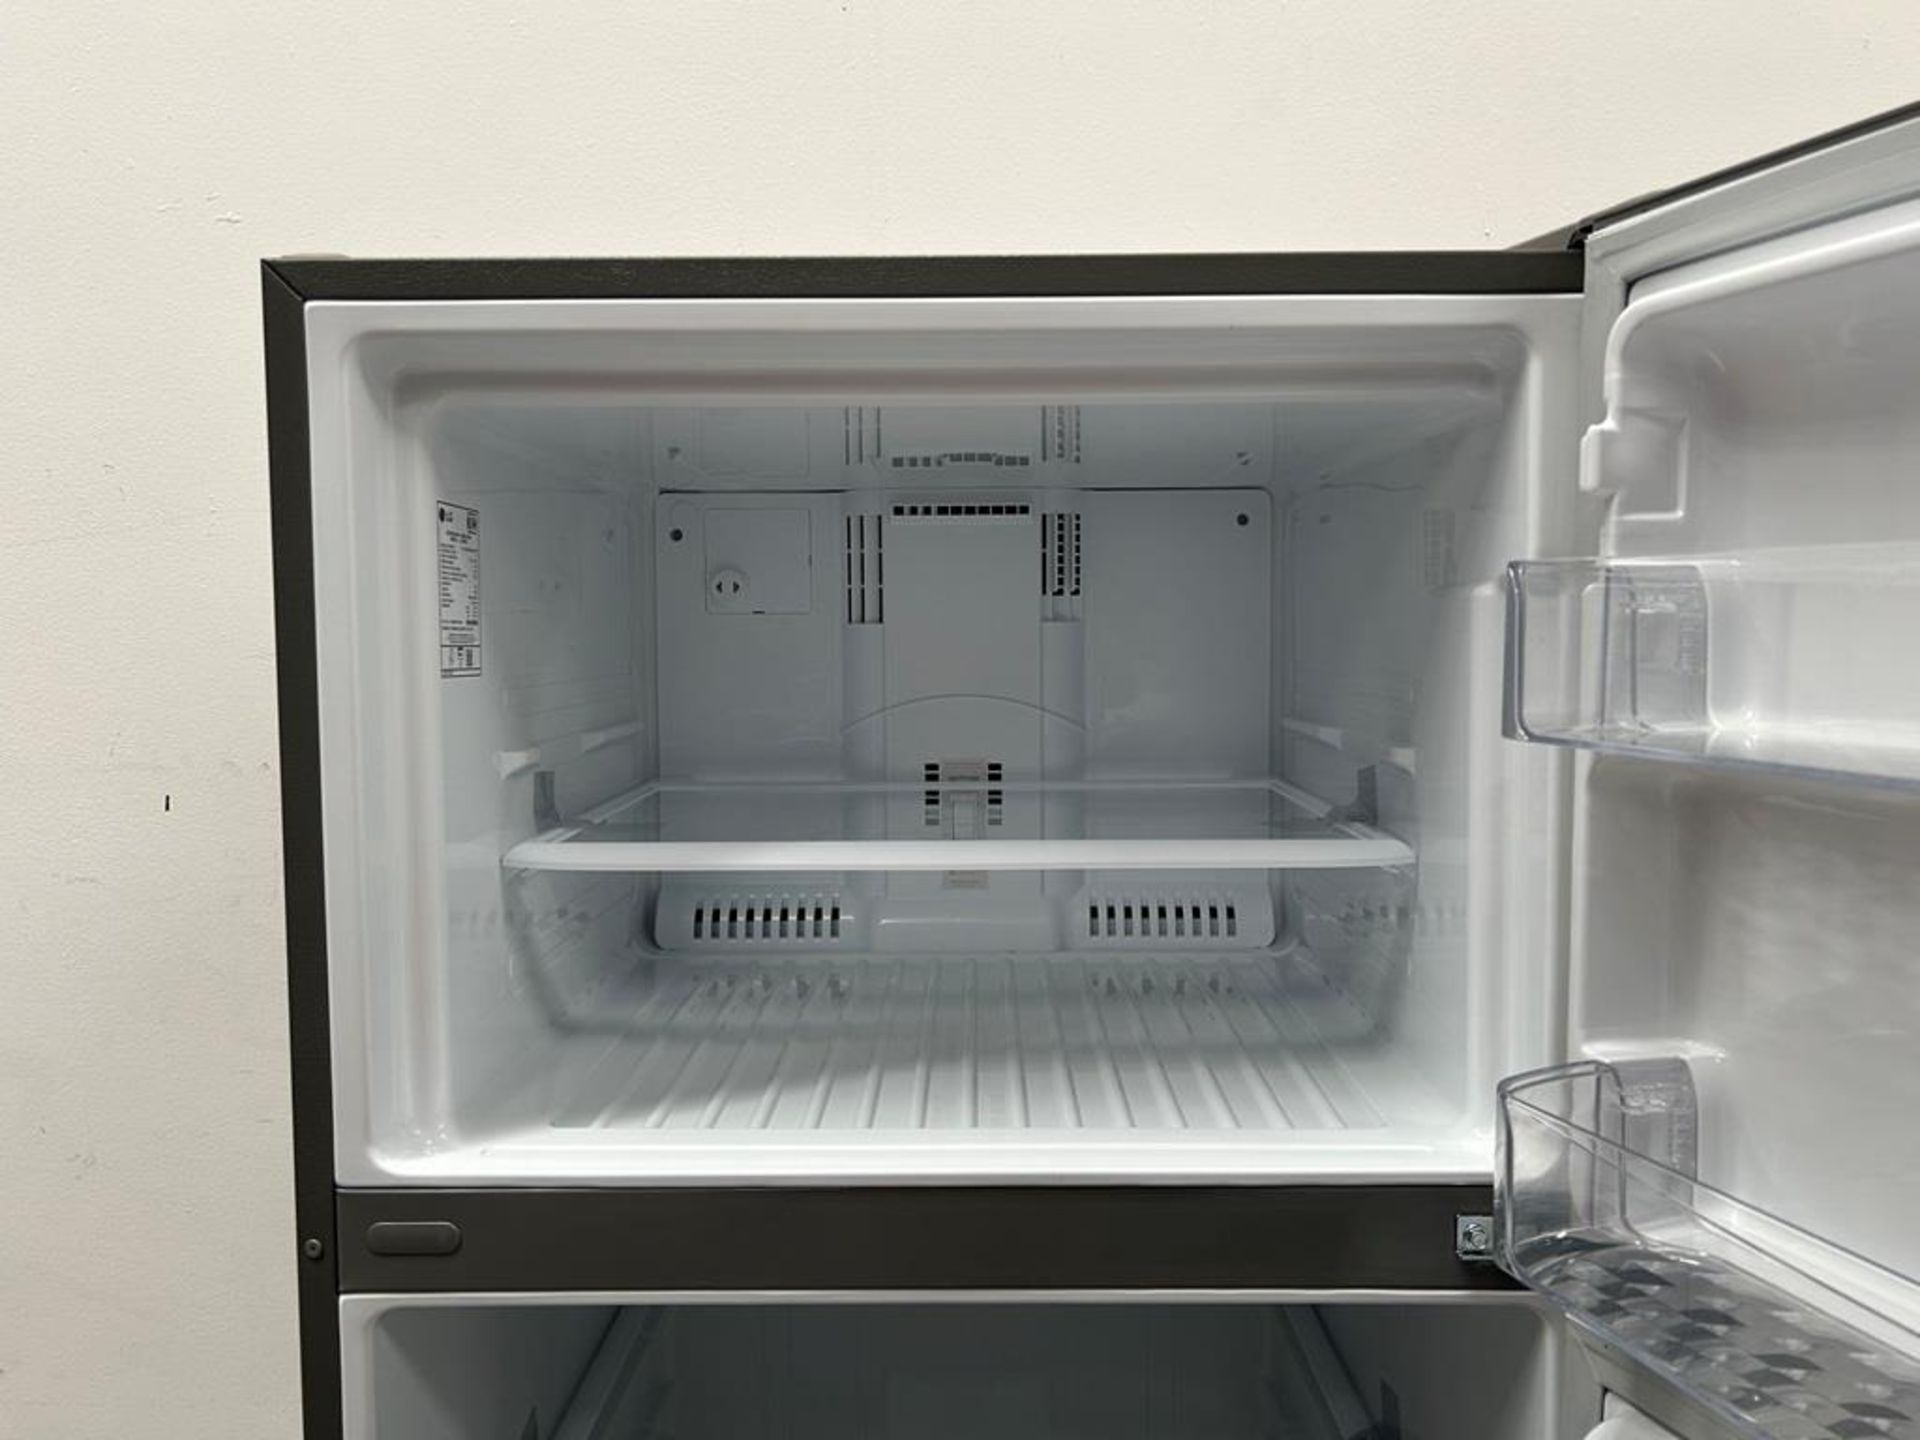 (NUEVO) Refrigerador Marca LG, Modelo LT57BPSX, Serie 1U863, Color GRIS - Image 6 of 11